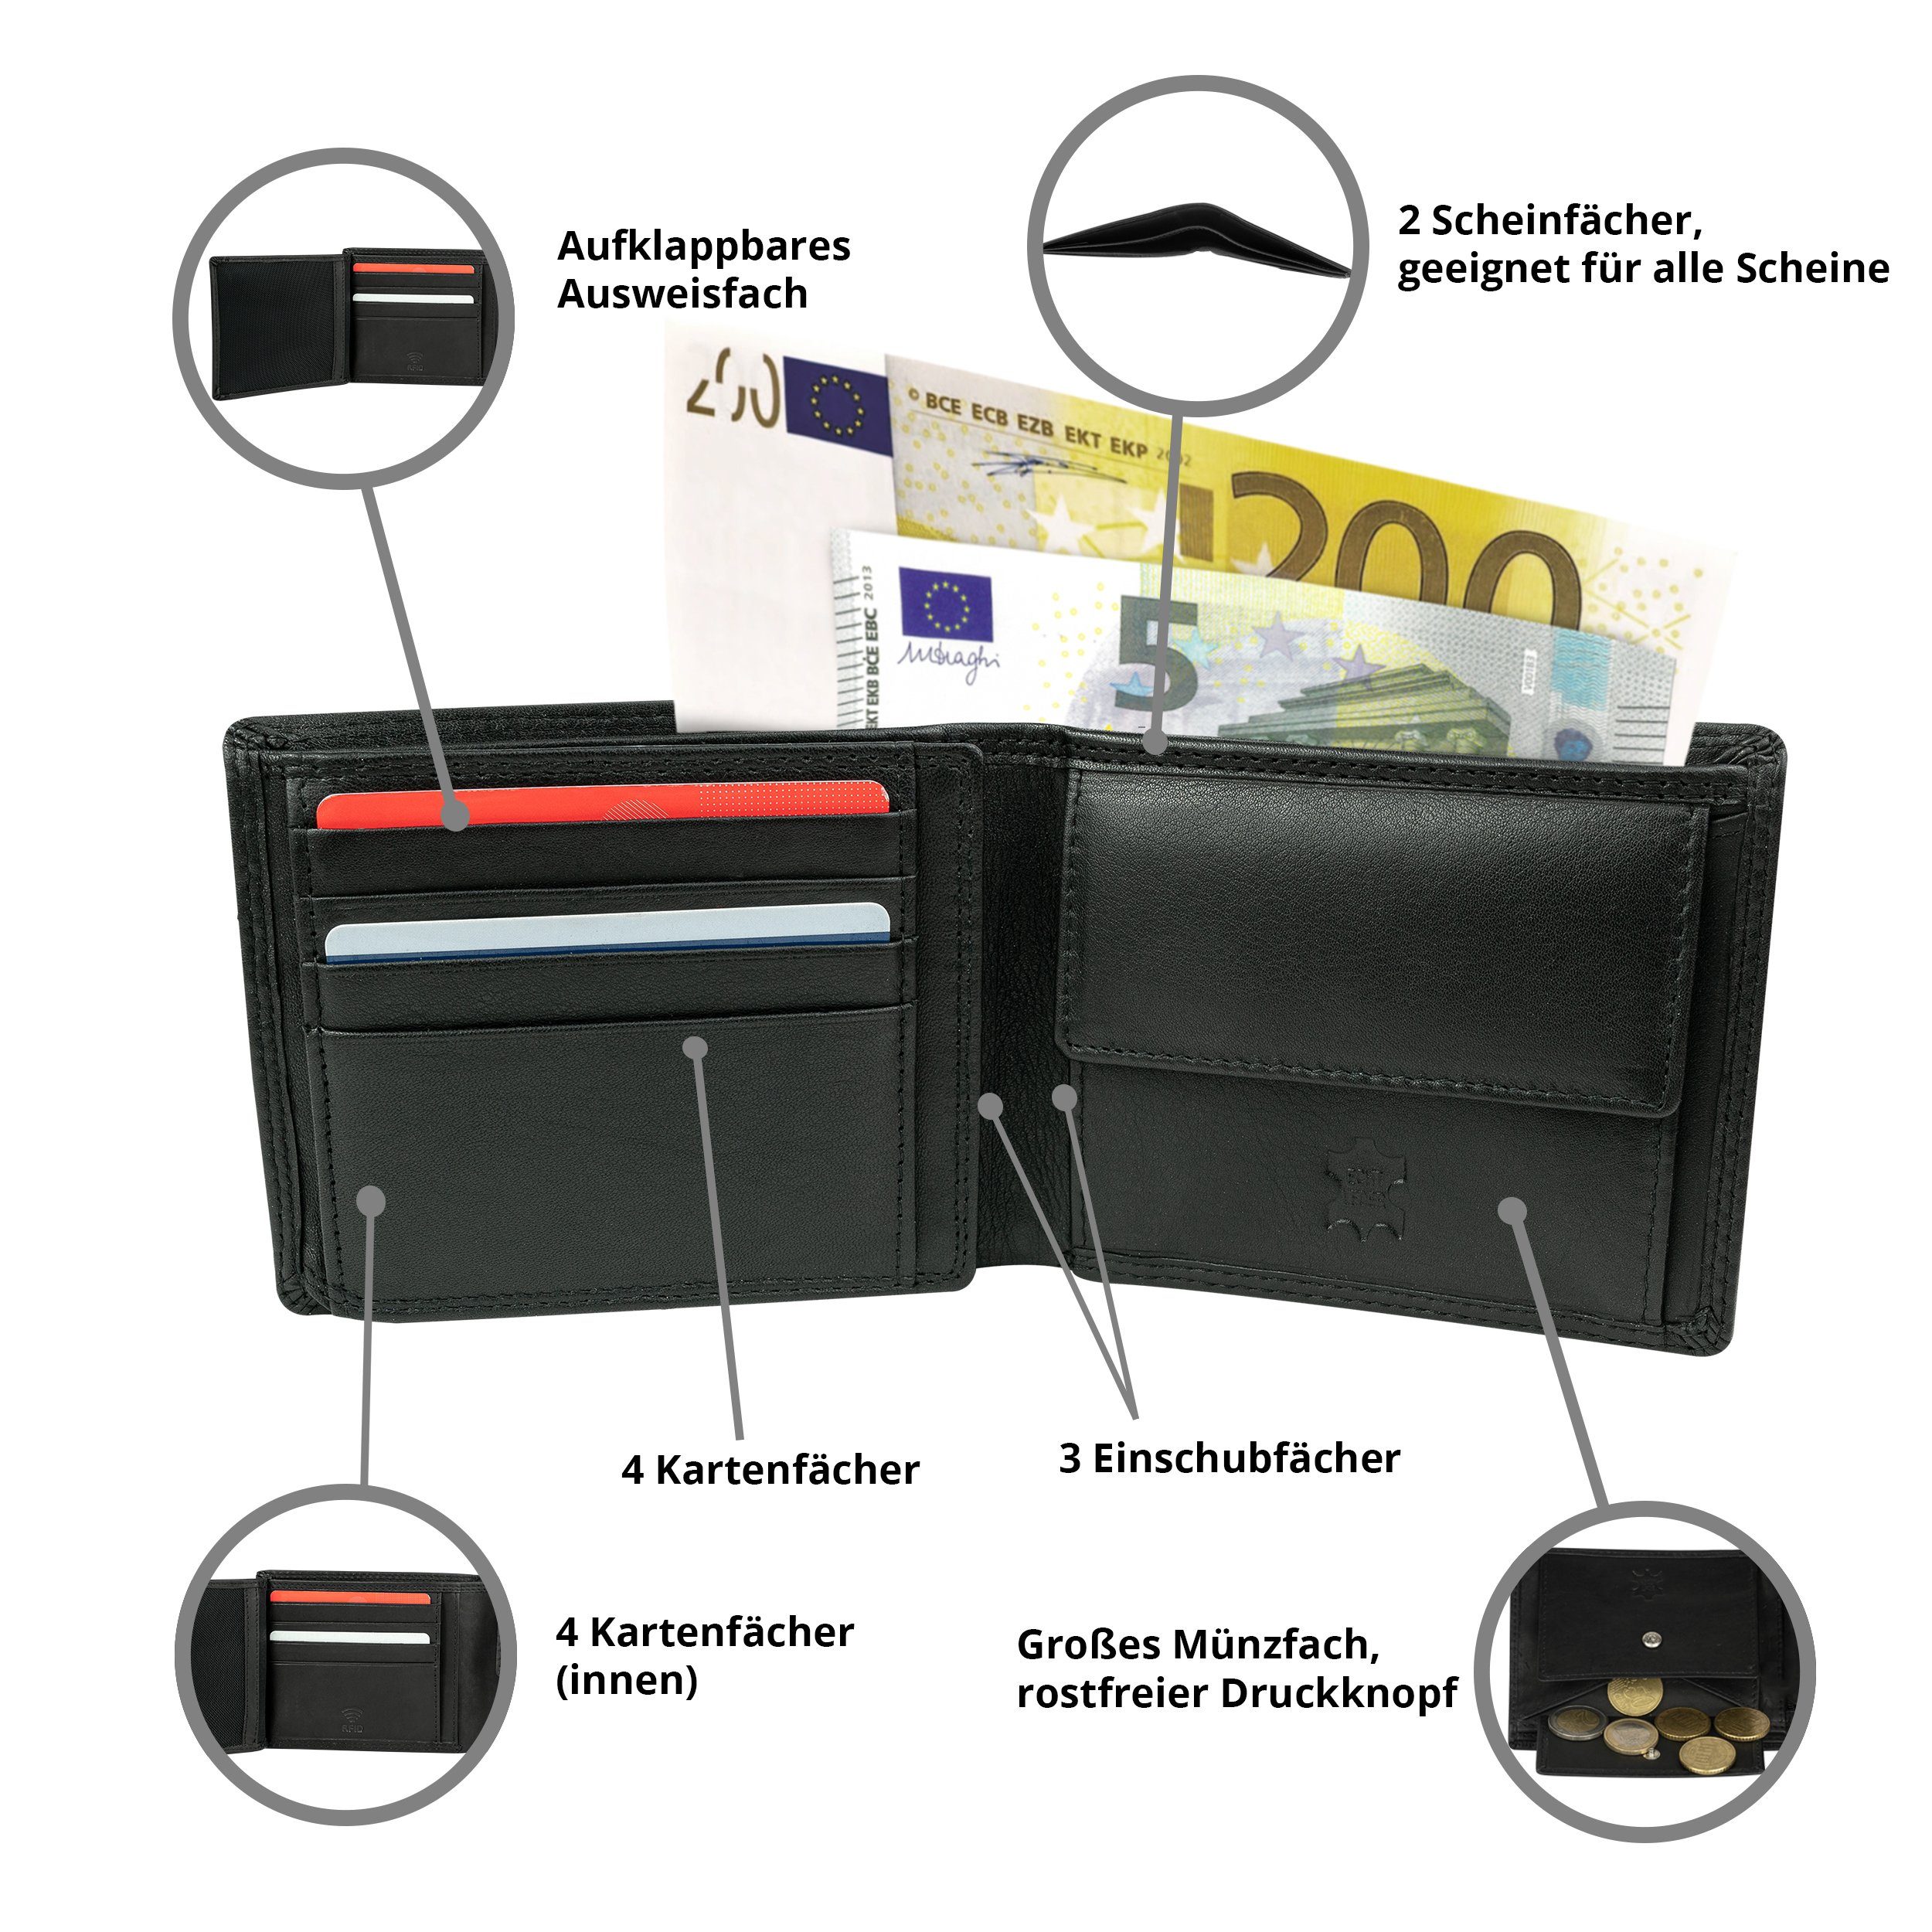 MOKIES Nappa-Leder, Herren Premium (querformat), Premium GN106 RFID-/NFC-Schutz, Echt-Leder, Nappa Geldbörse 100% Portemonnaie Geschenkbox